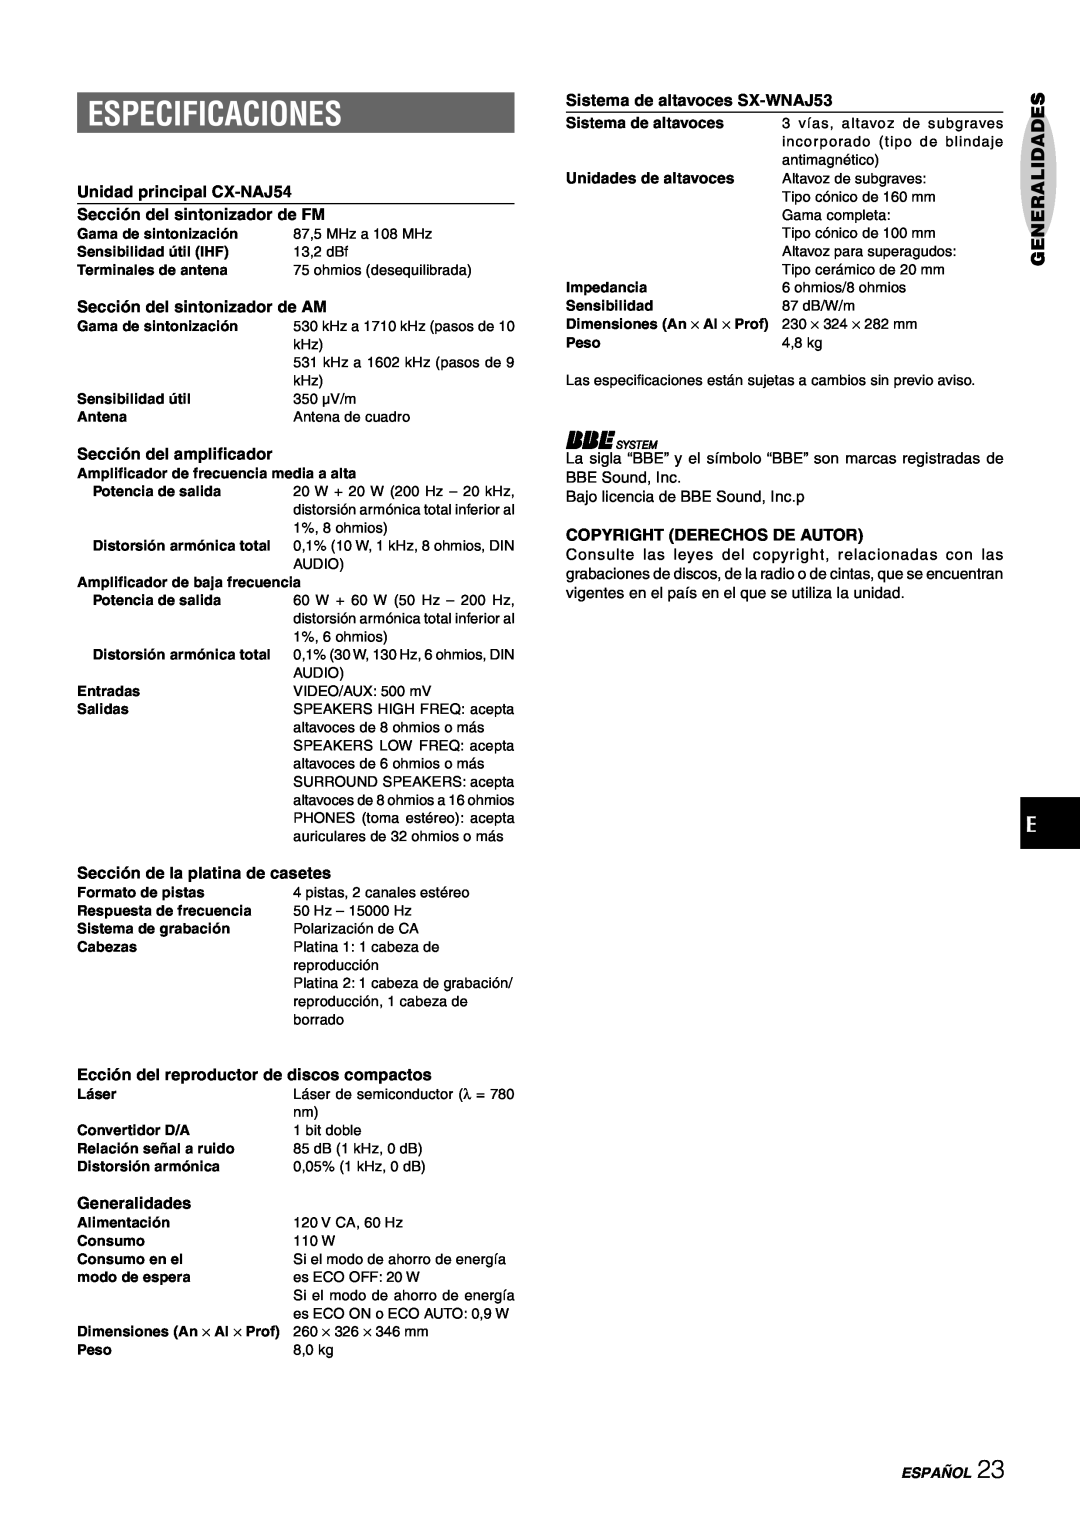 Aiwa manual Especificaciones, Unidad principal CX-NAJ54, Sección del sintonizador de FM, Sección del sintonizador de AM 